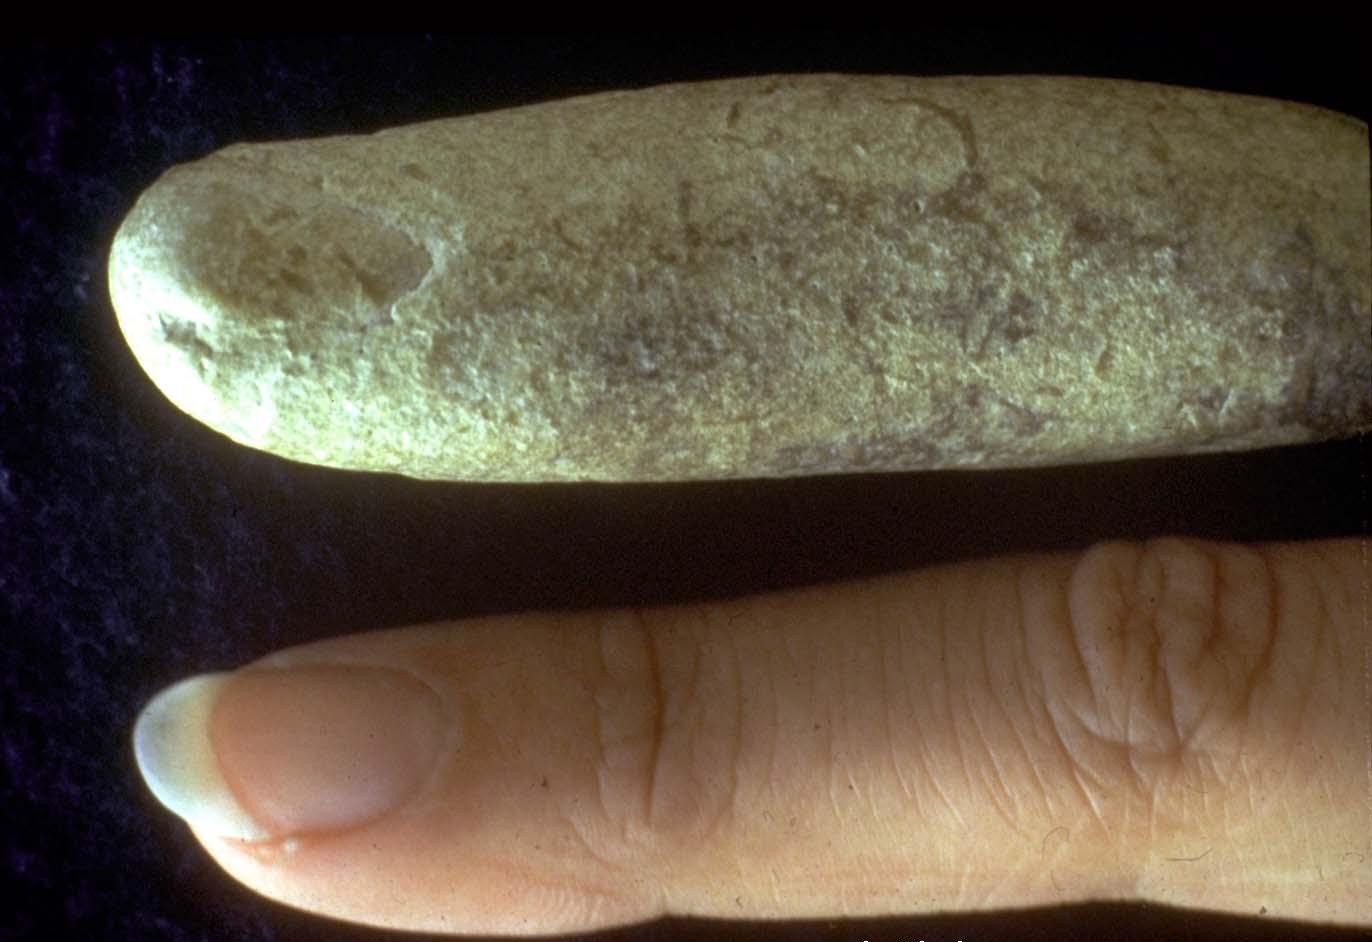 fosil jari manusia “modern” berusia lebih dari 100 juta tahun!!